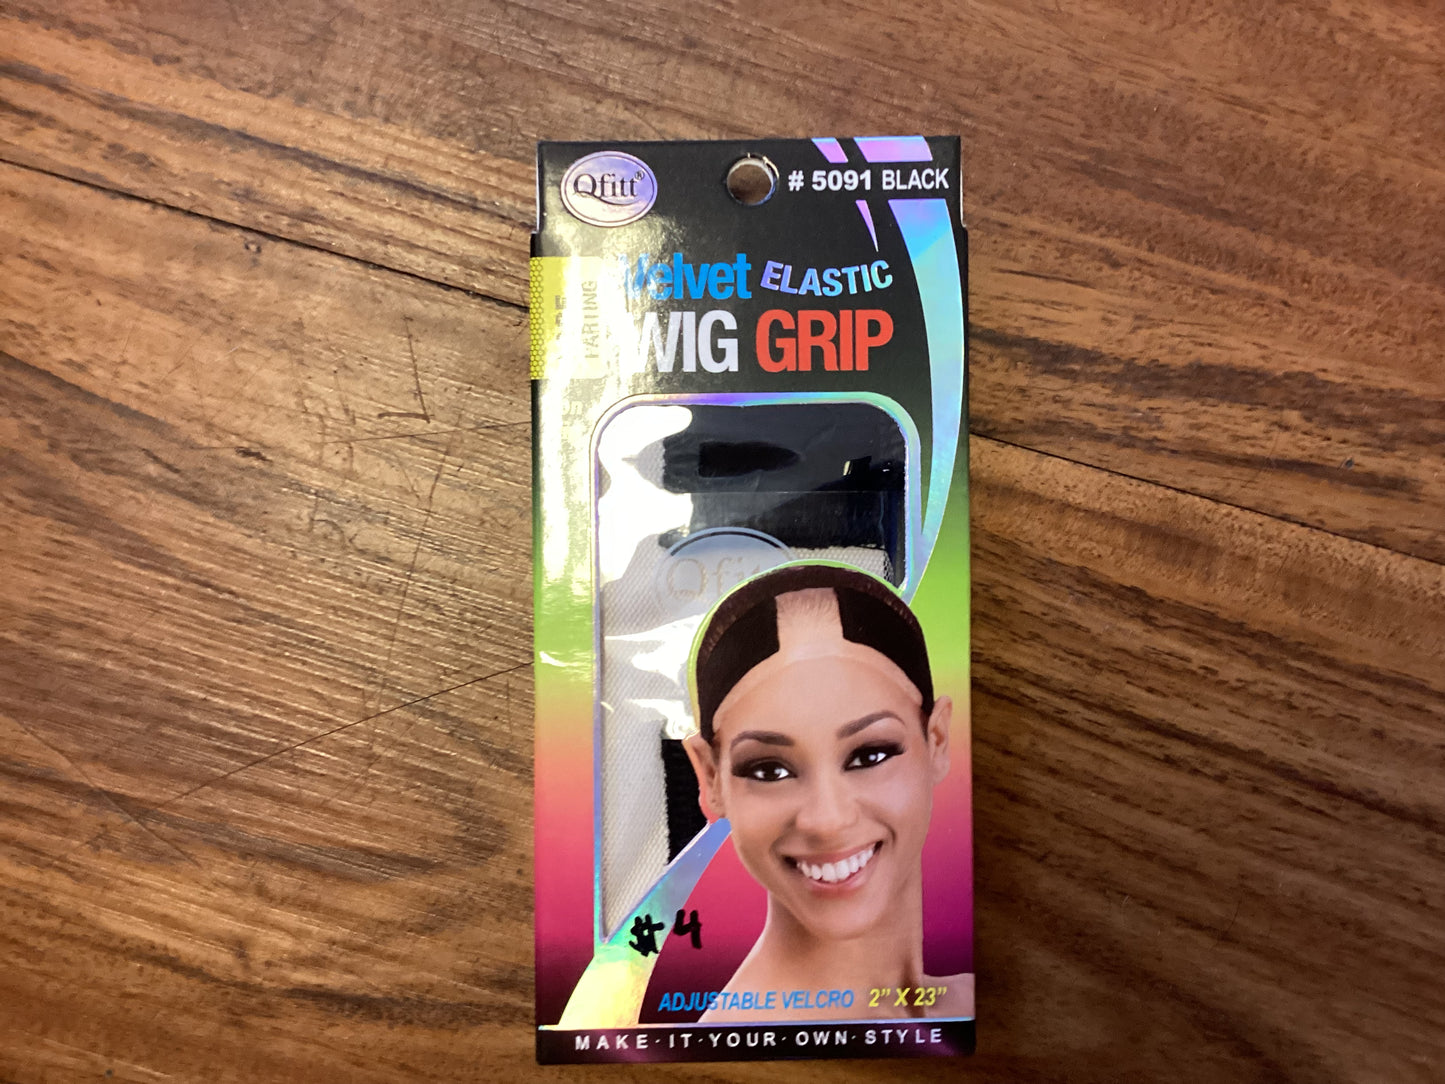 Qfitt Velvet Elastic Wig Grip